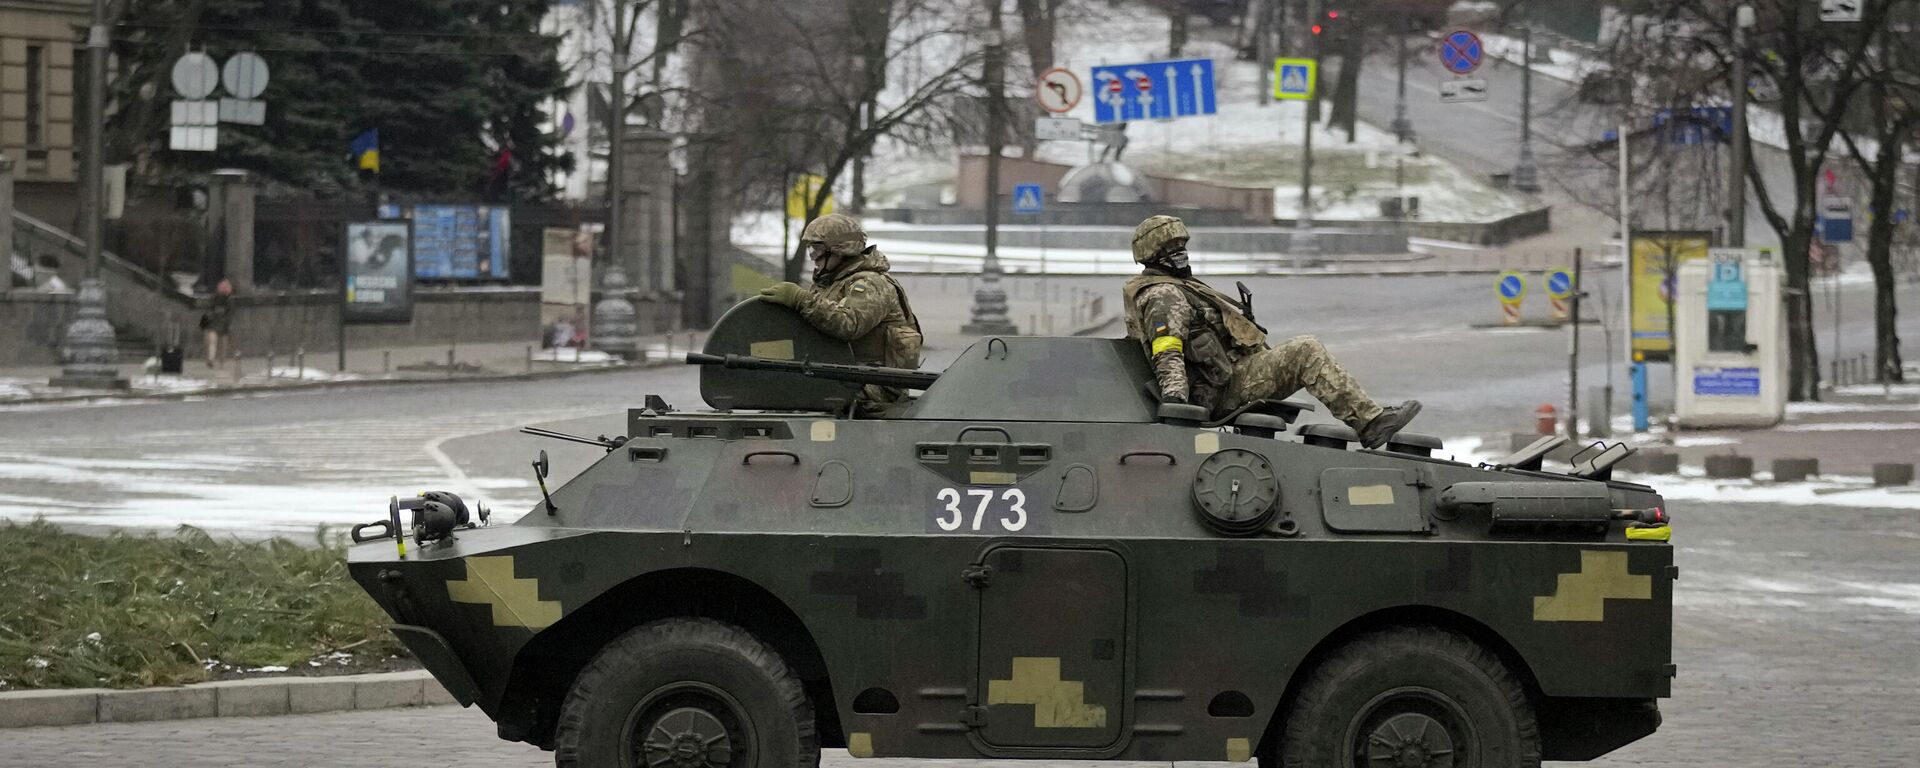 Украинские военнослужащие едут на бронетранспортере в Киеве - Sputnik Кыргызстан, 1920, 28.03.2022